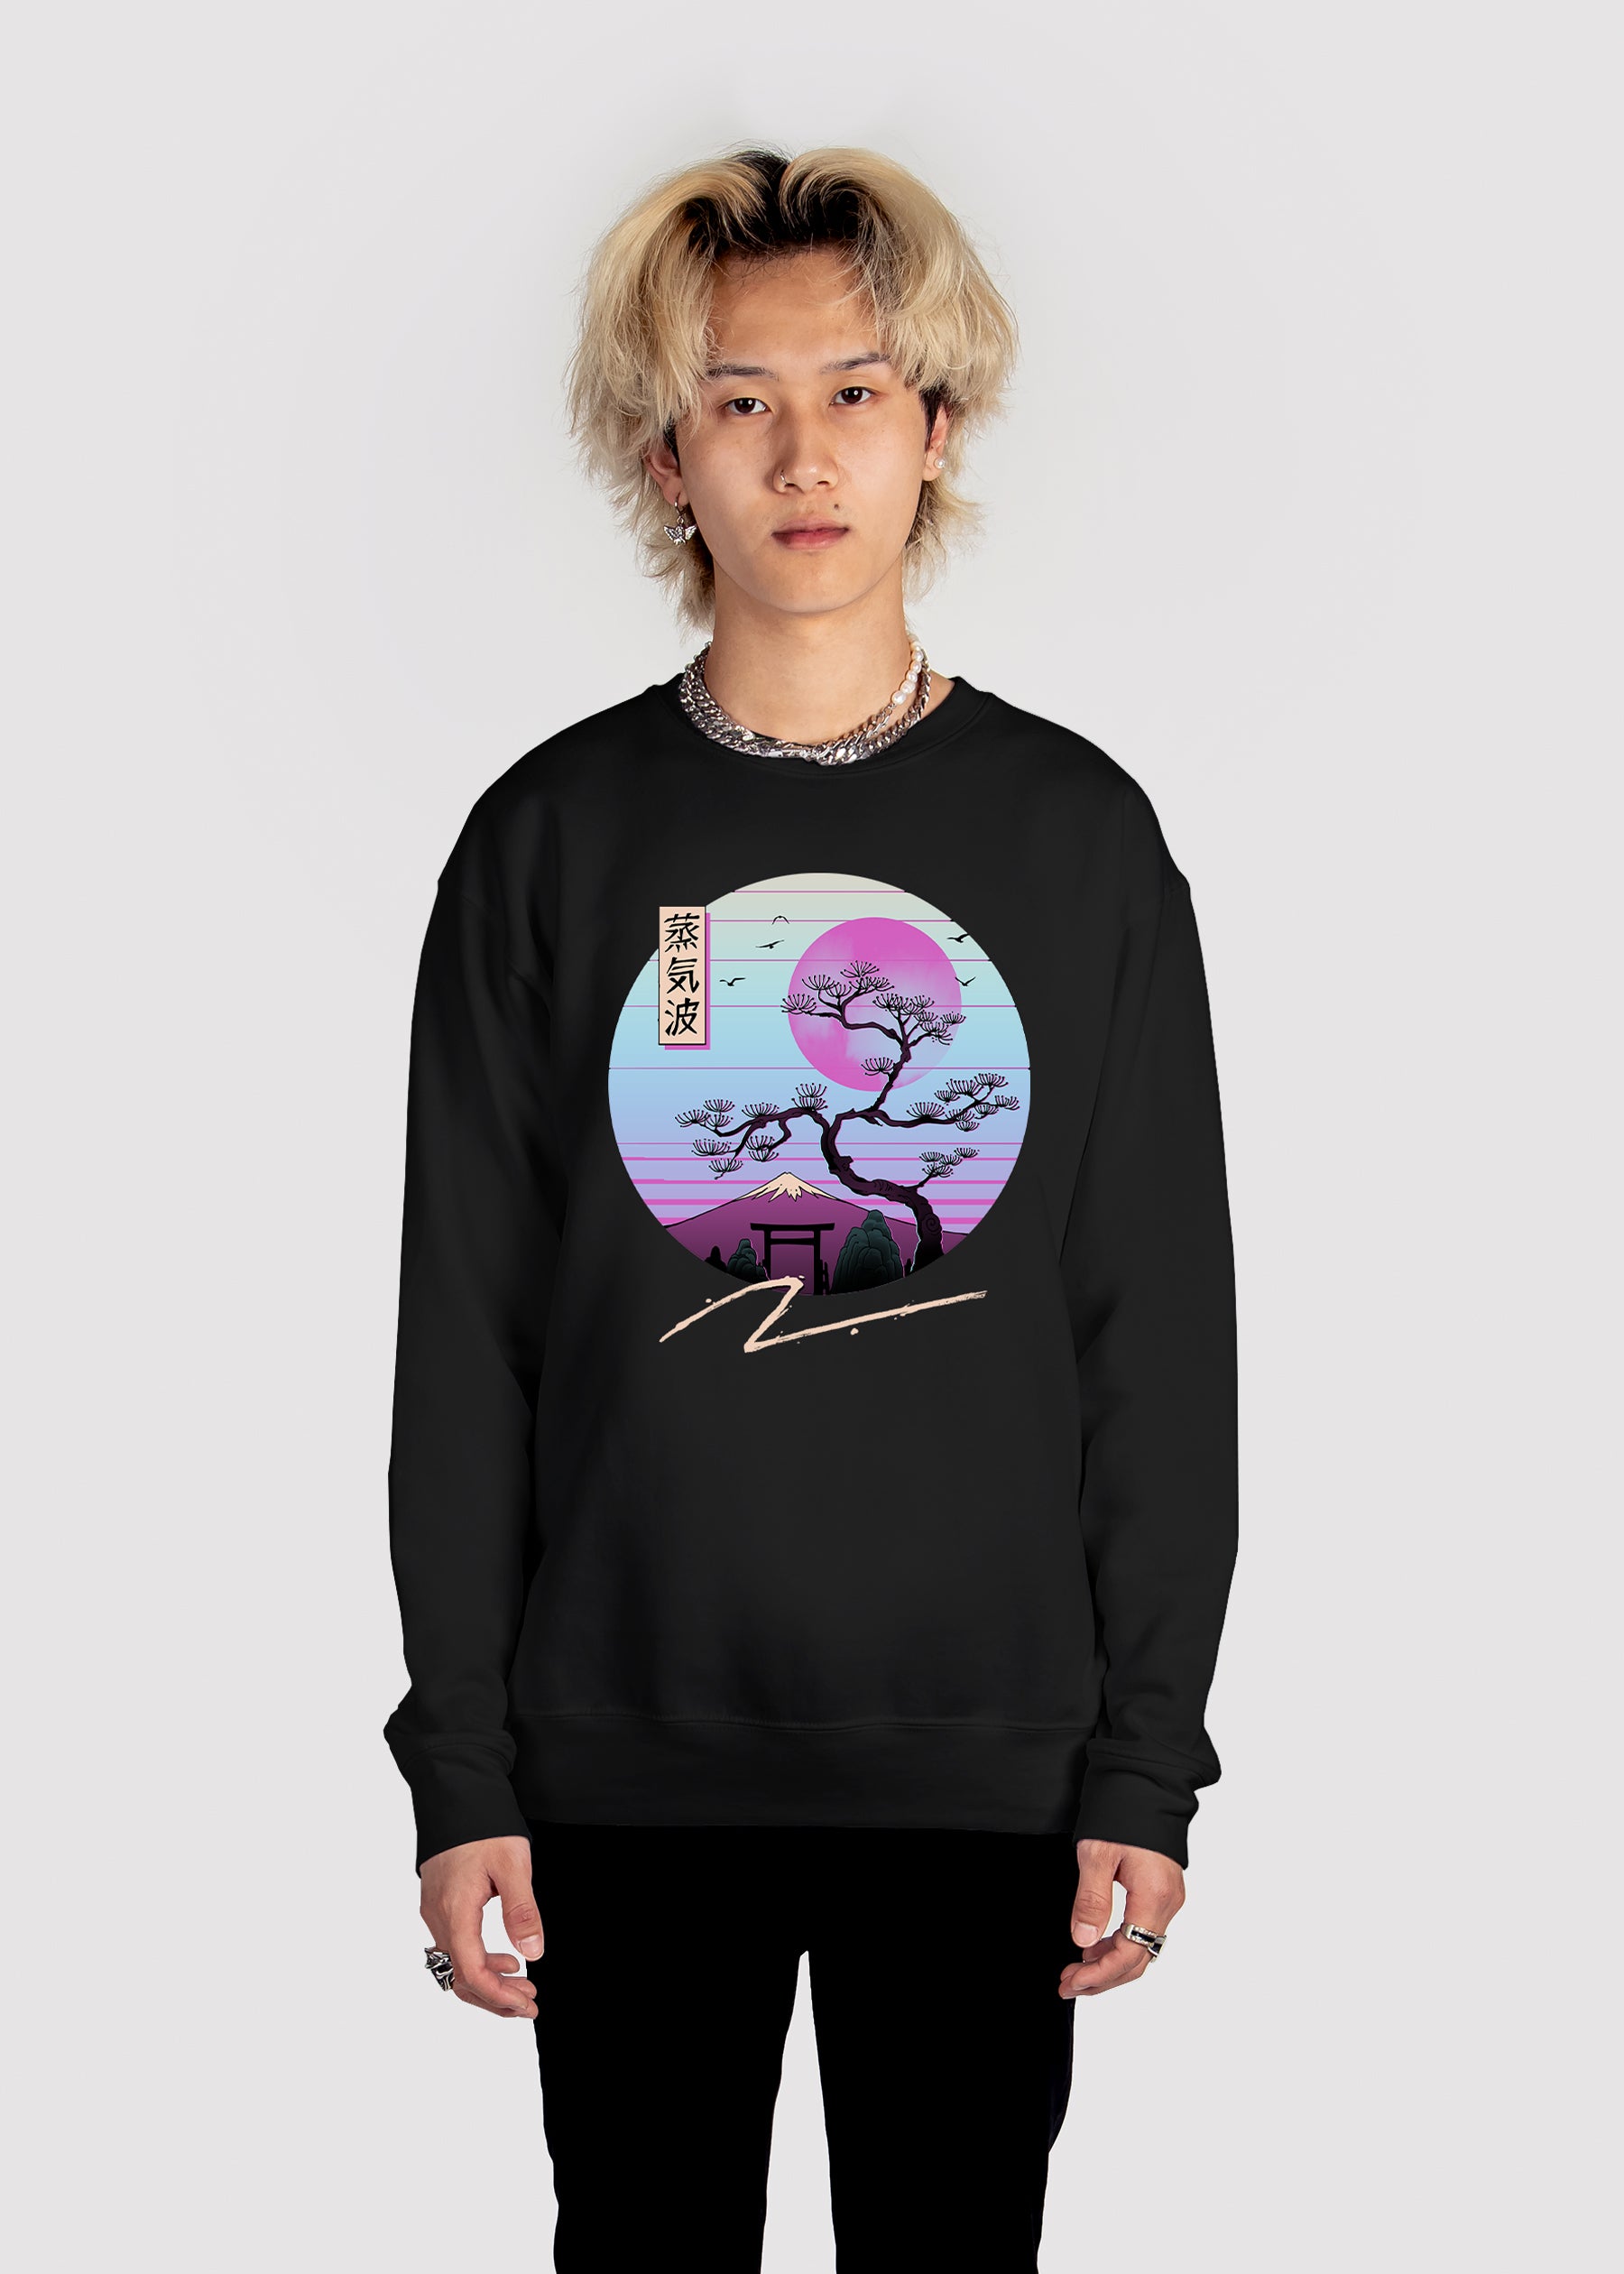 Moonlight Aesthetic Sweatshirt